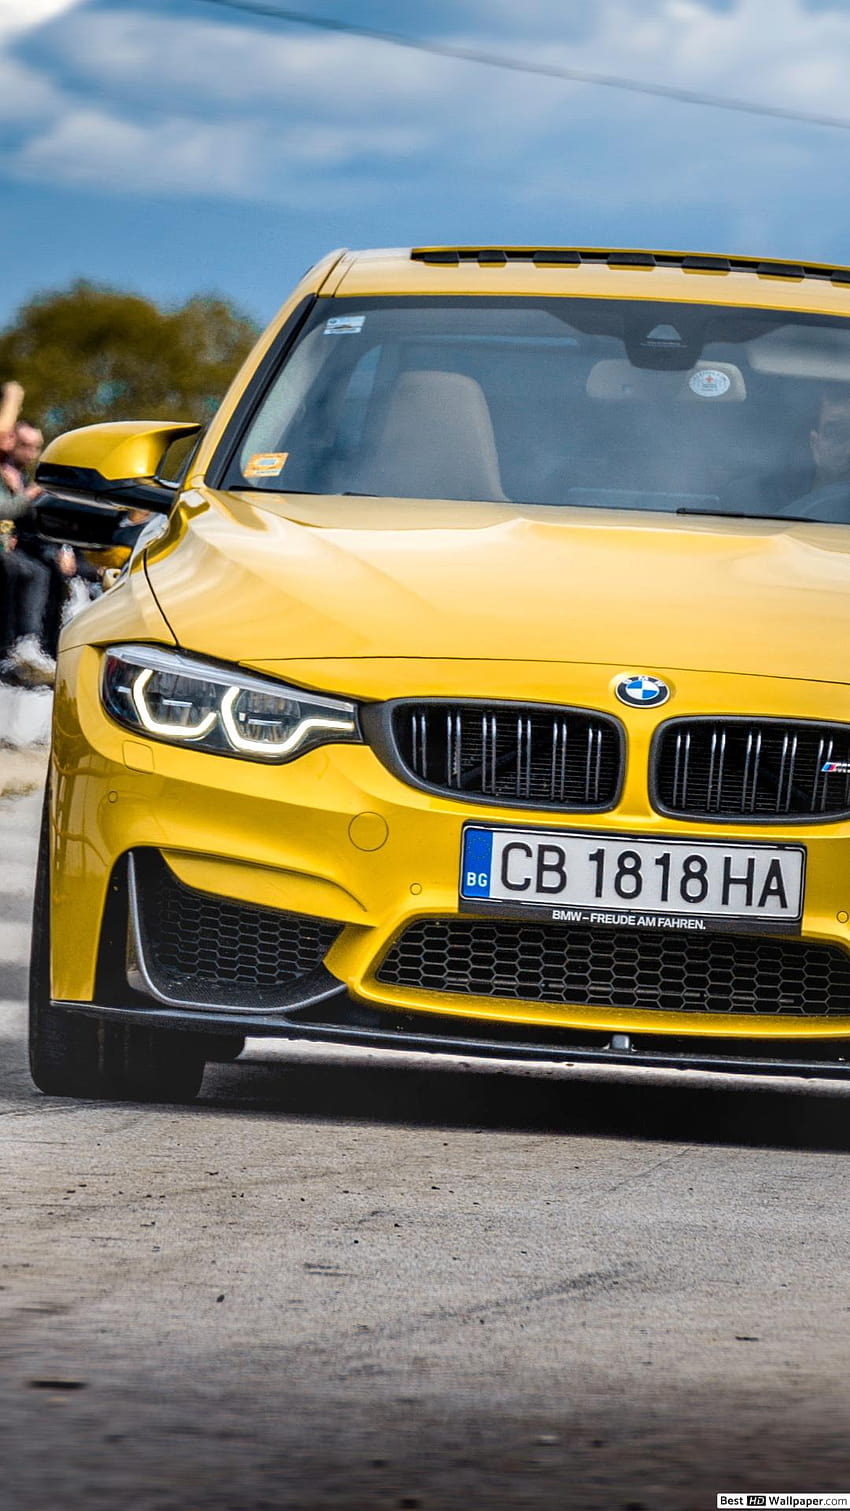 Voiture BMW, véhicule terrestre, véhicule, voiture, jaune, BMW, voiture de sport, voiture de performance, BMW M3, voiture de luxe personnelle, conception automobile, BMW jaune Fond d'écran de téléphone HD